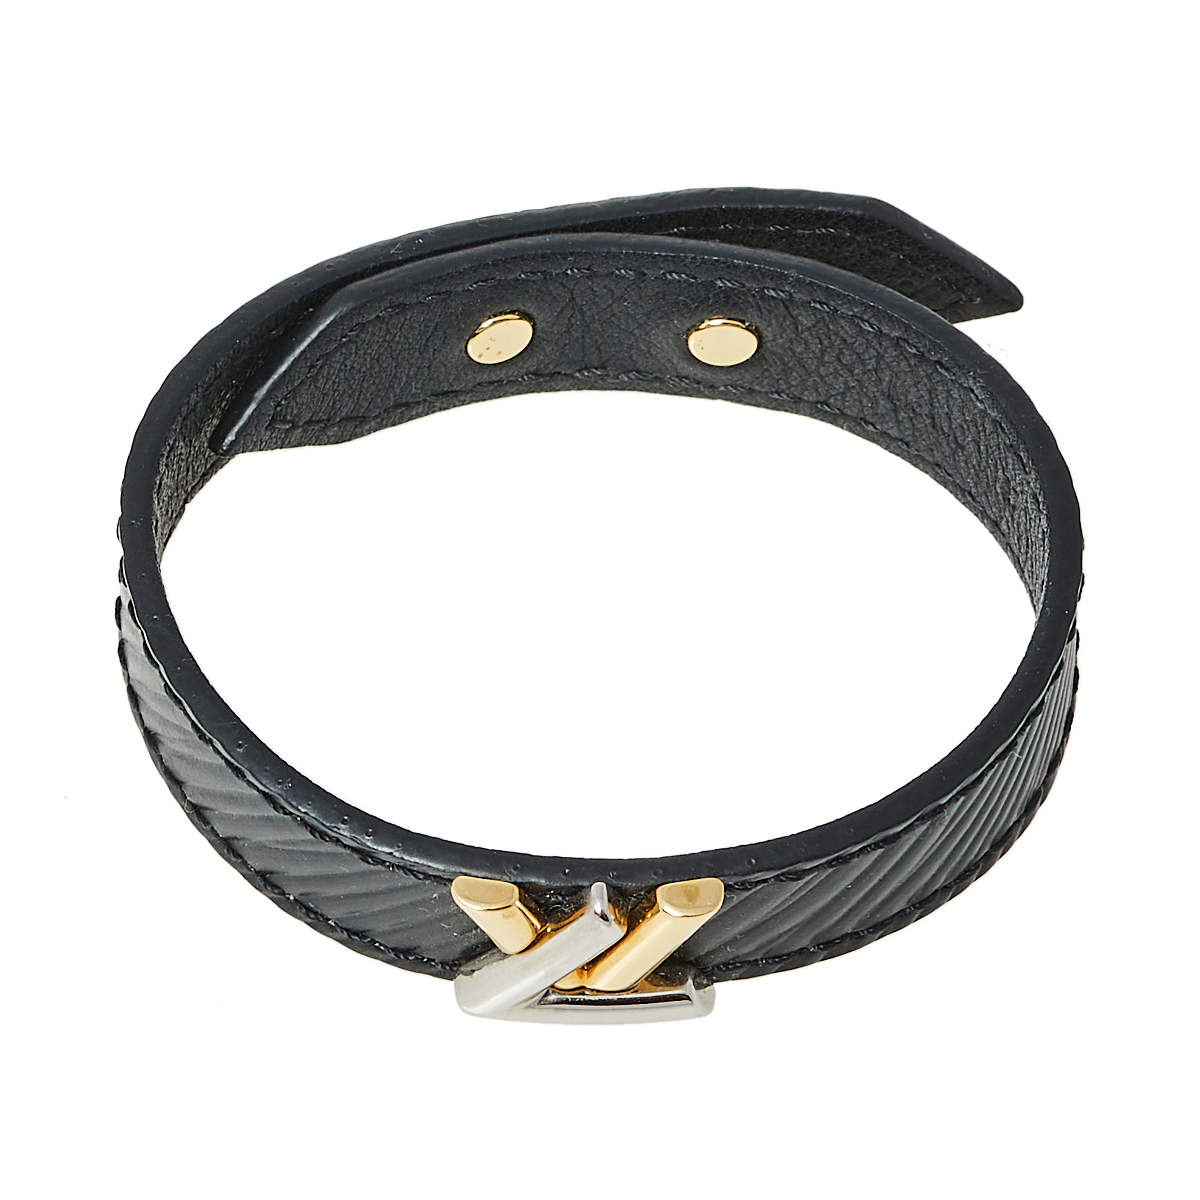 NWOT Authentic Louis Vuitton Twist It Cuff Bracelet - Size 17